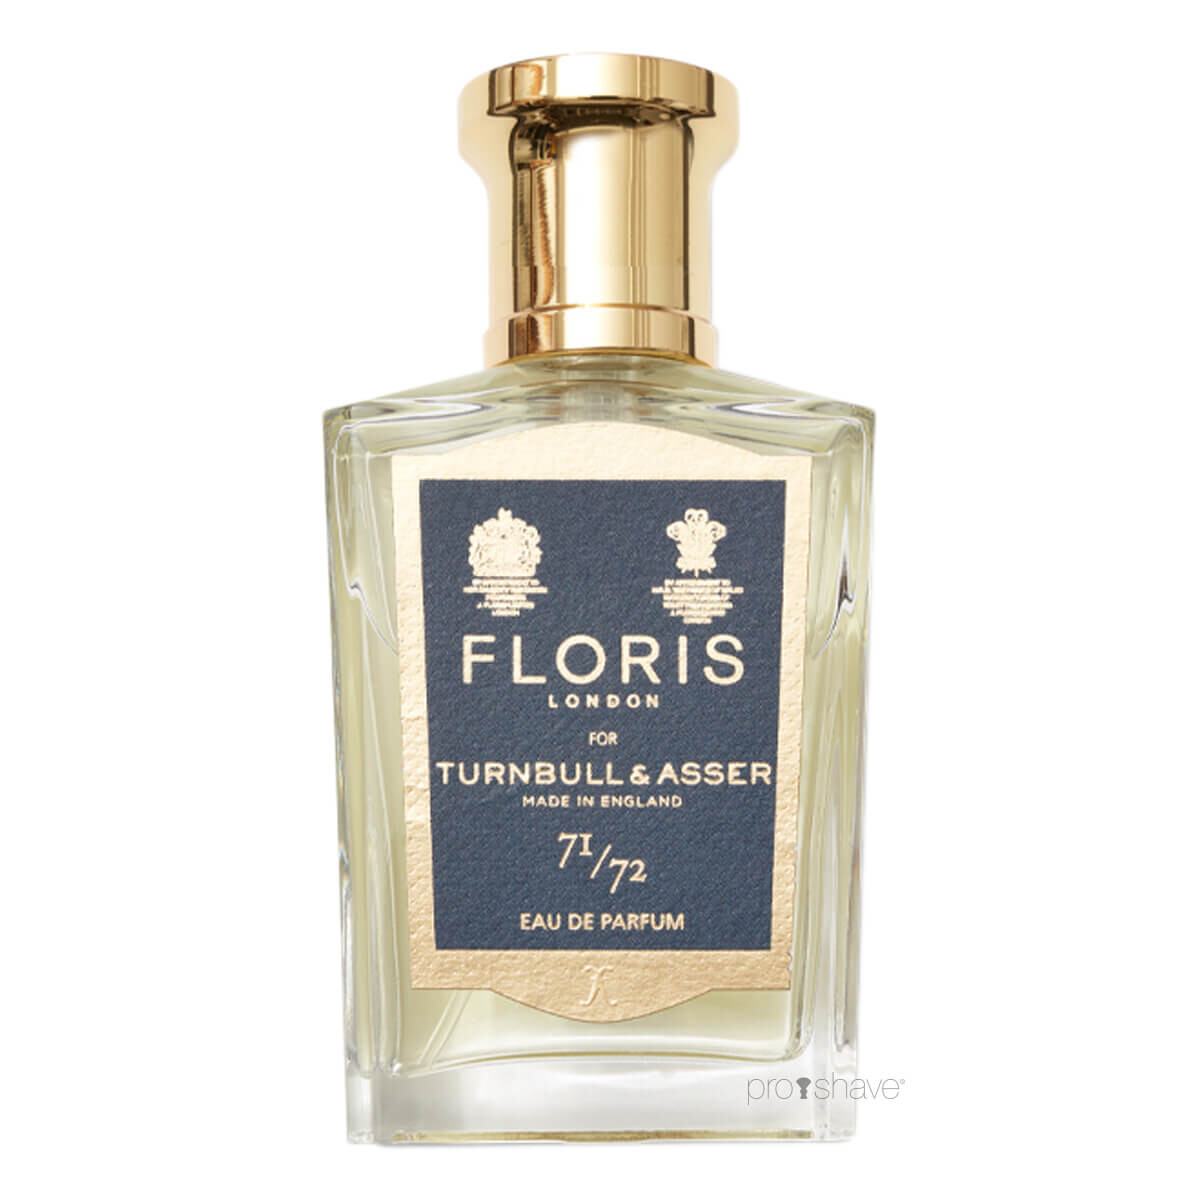 Se Floris x Turnbull & Asser 71/72, Eau de Parfum, 50 ml. hos Proshave